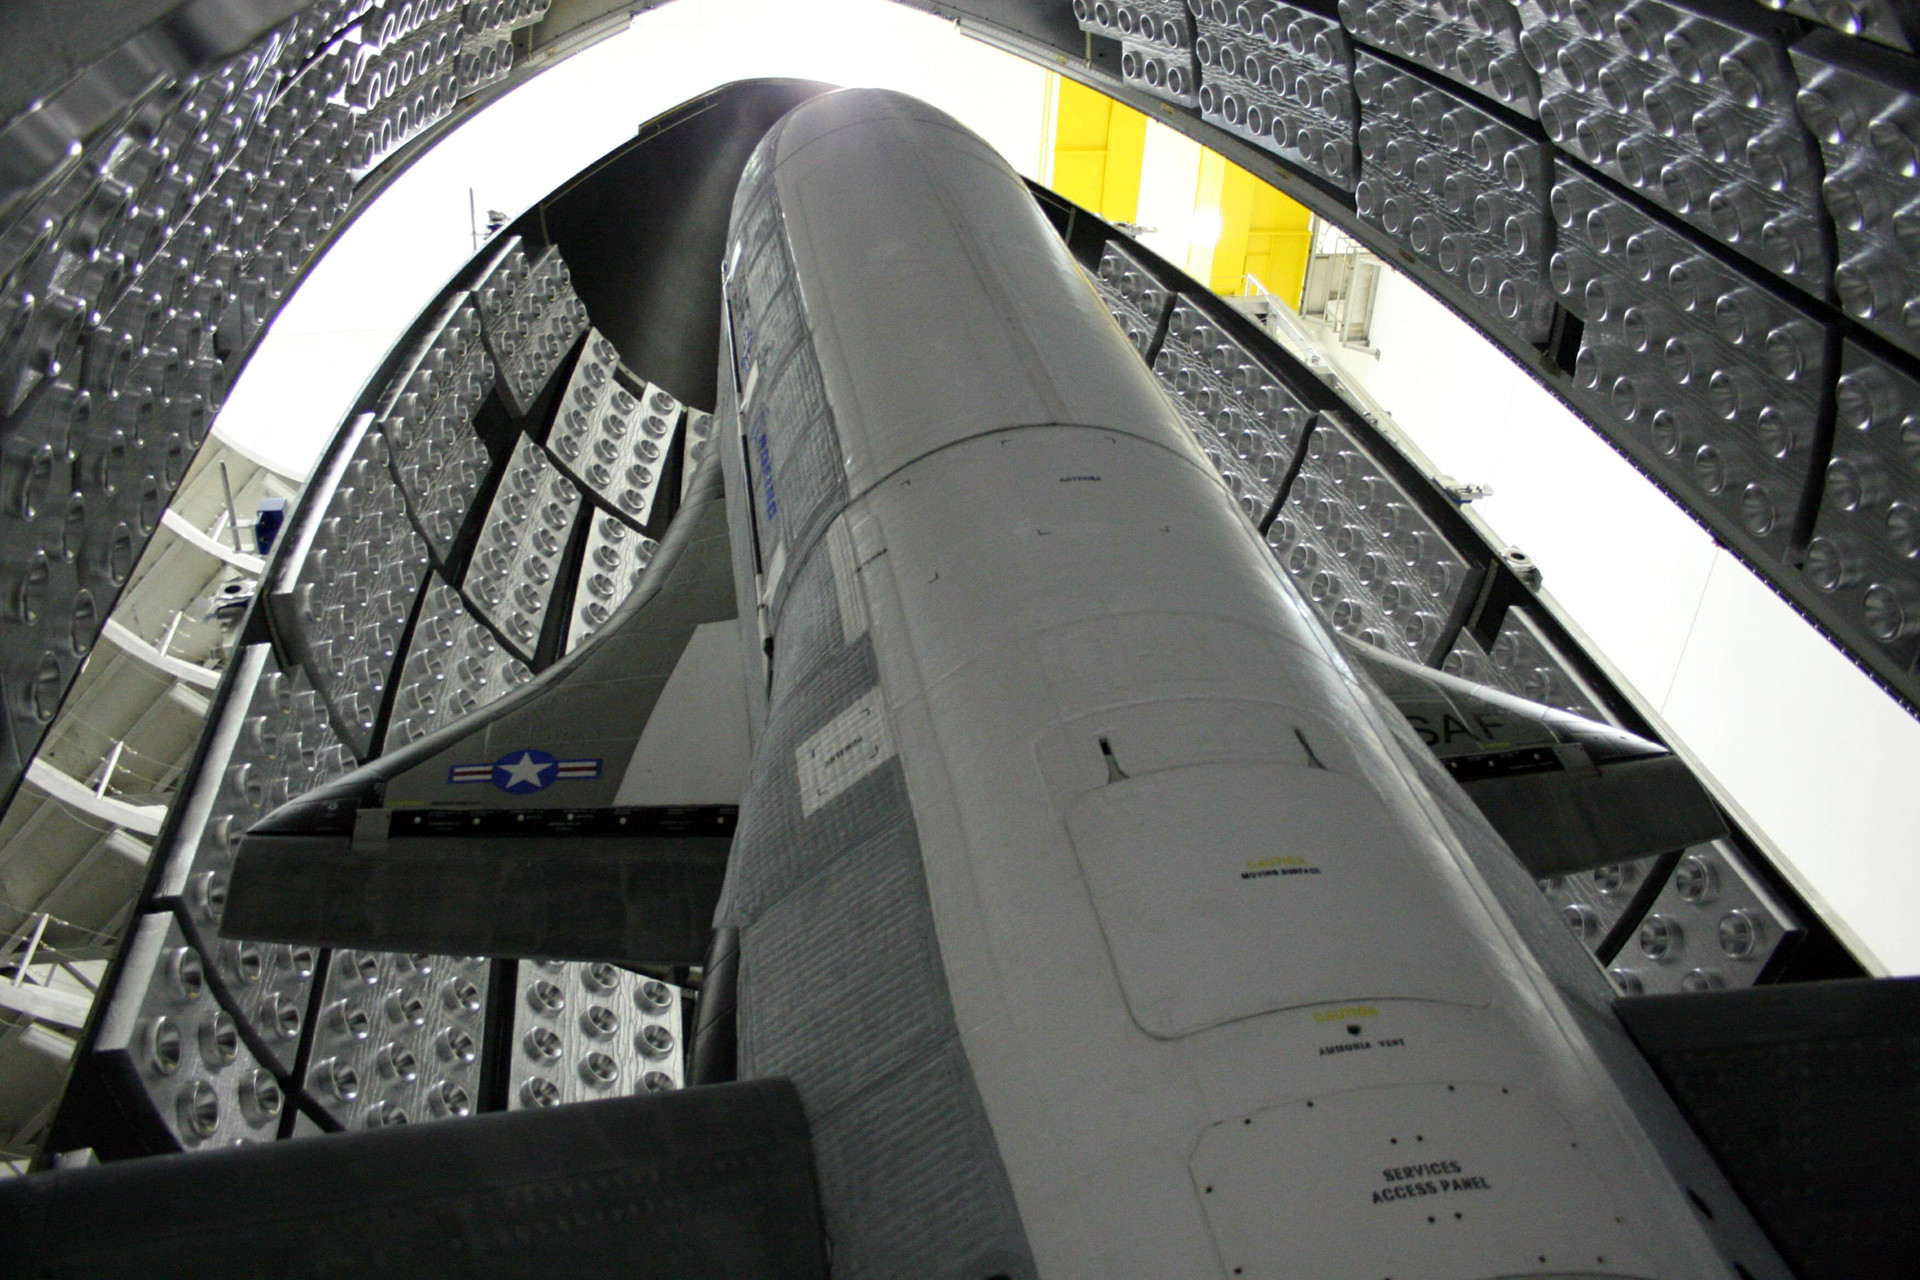 «Звёздные войны» снова актуальны»: как ВВС США испытывают орбитальный самолёт X-37B